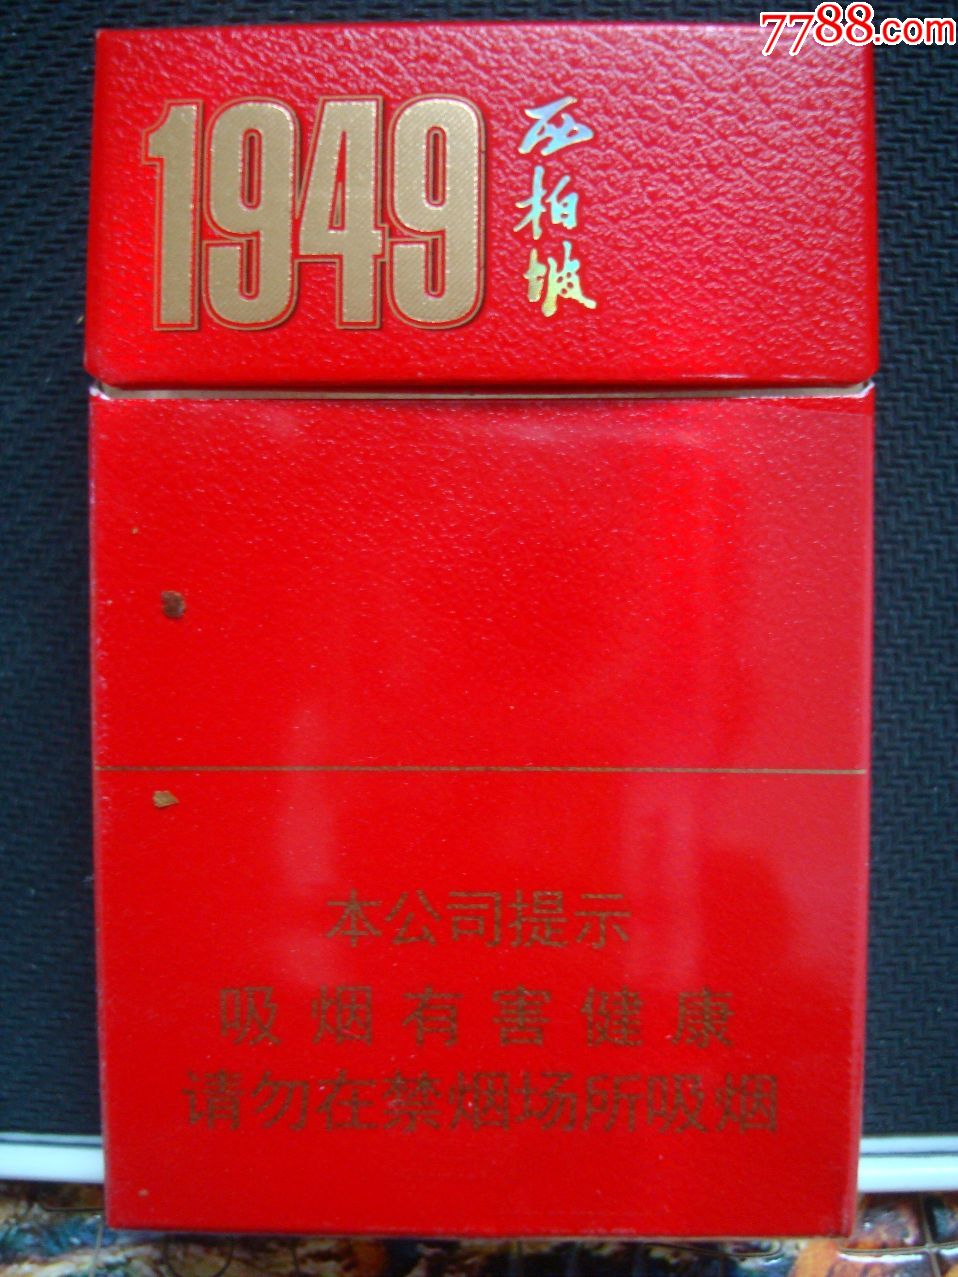 西柏坡1949细支袋装图片